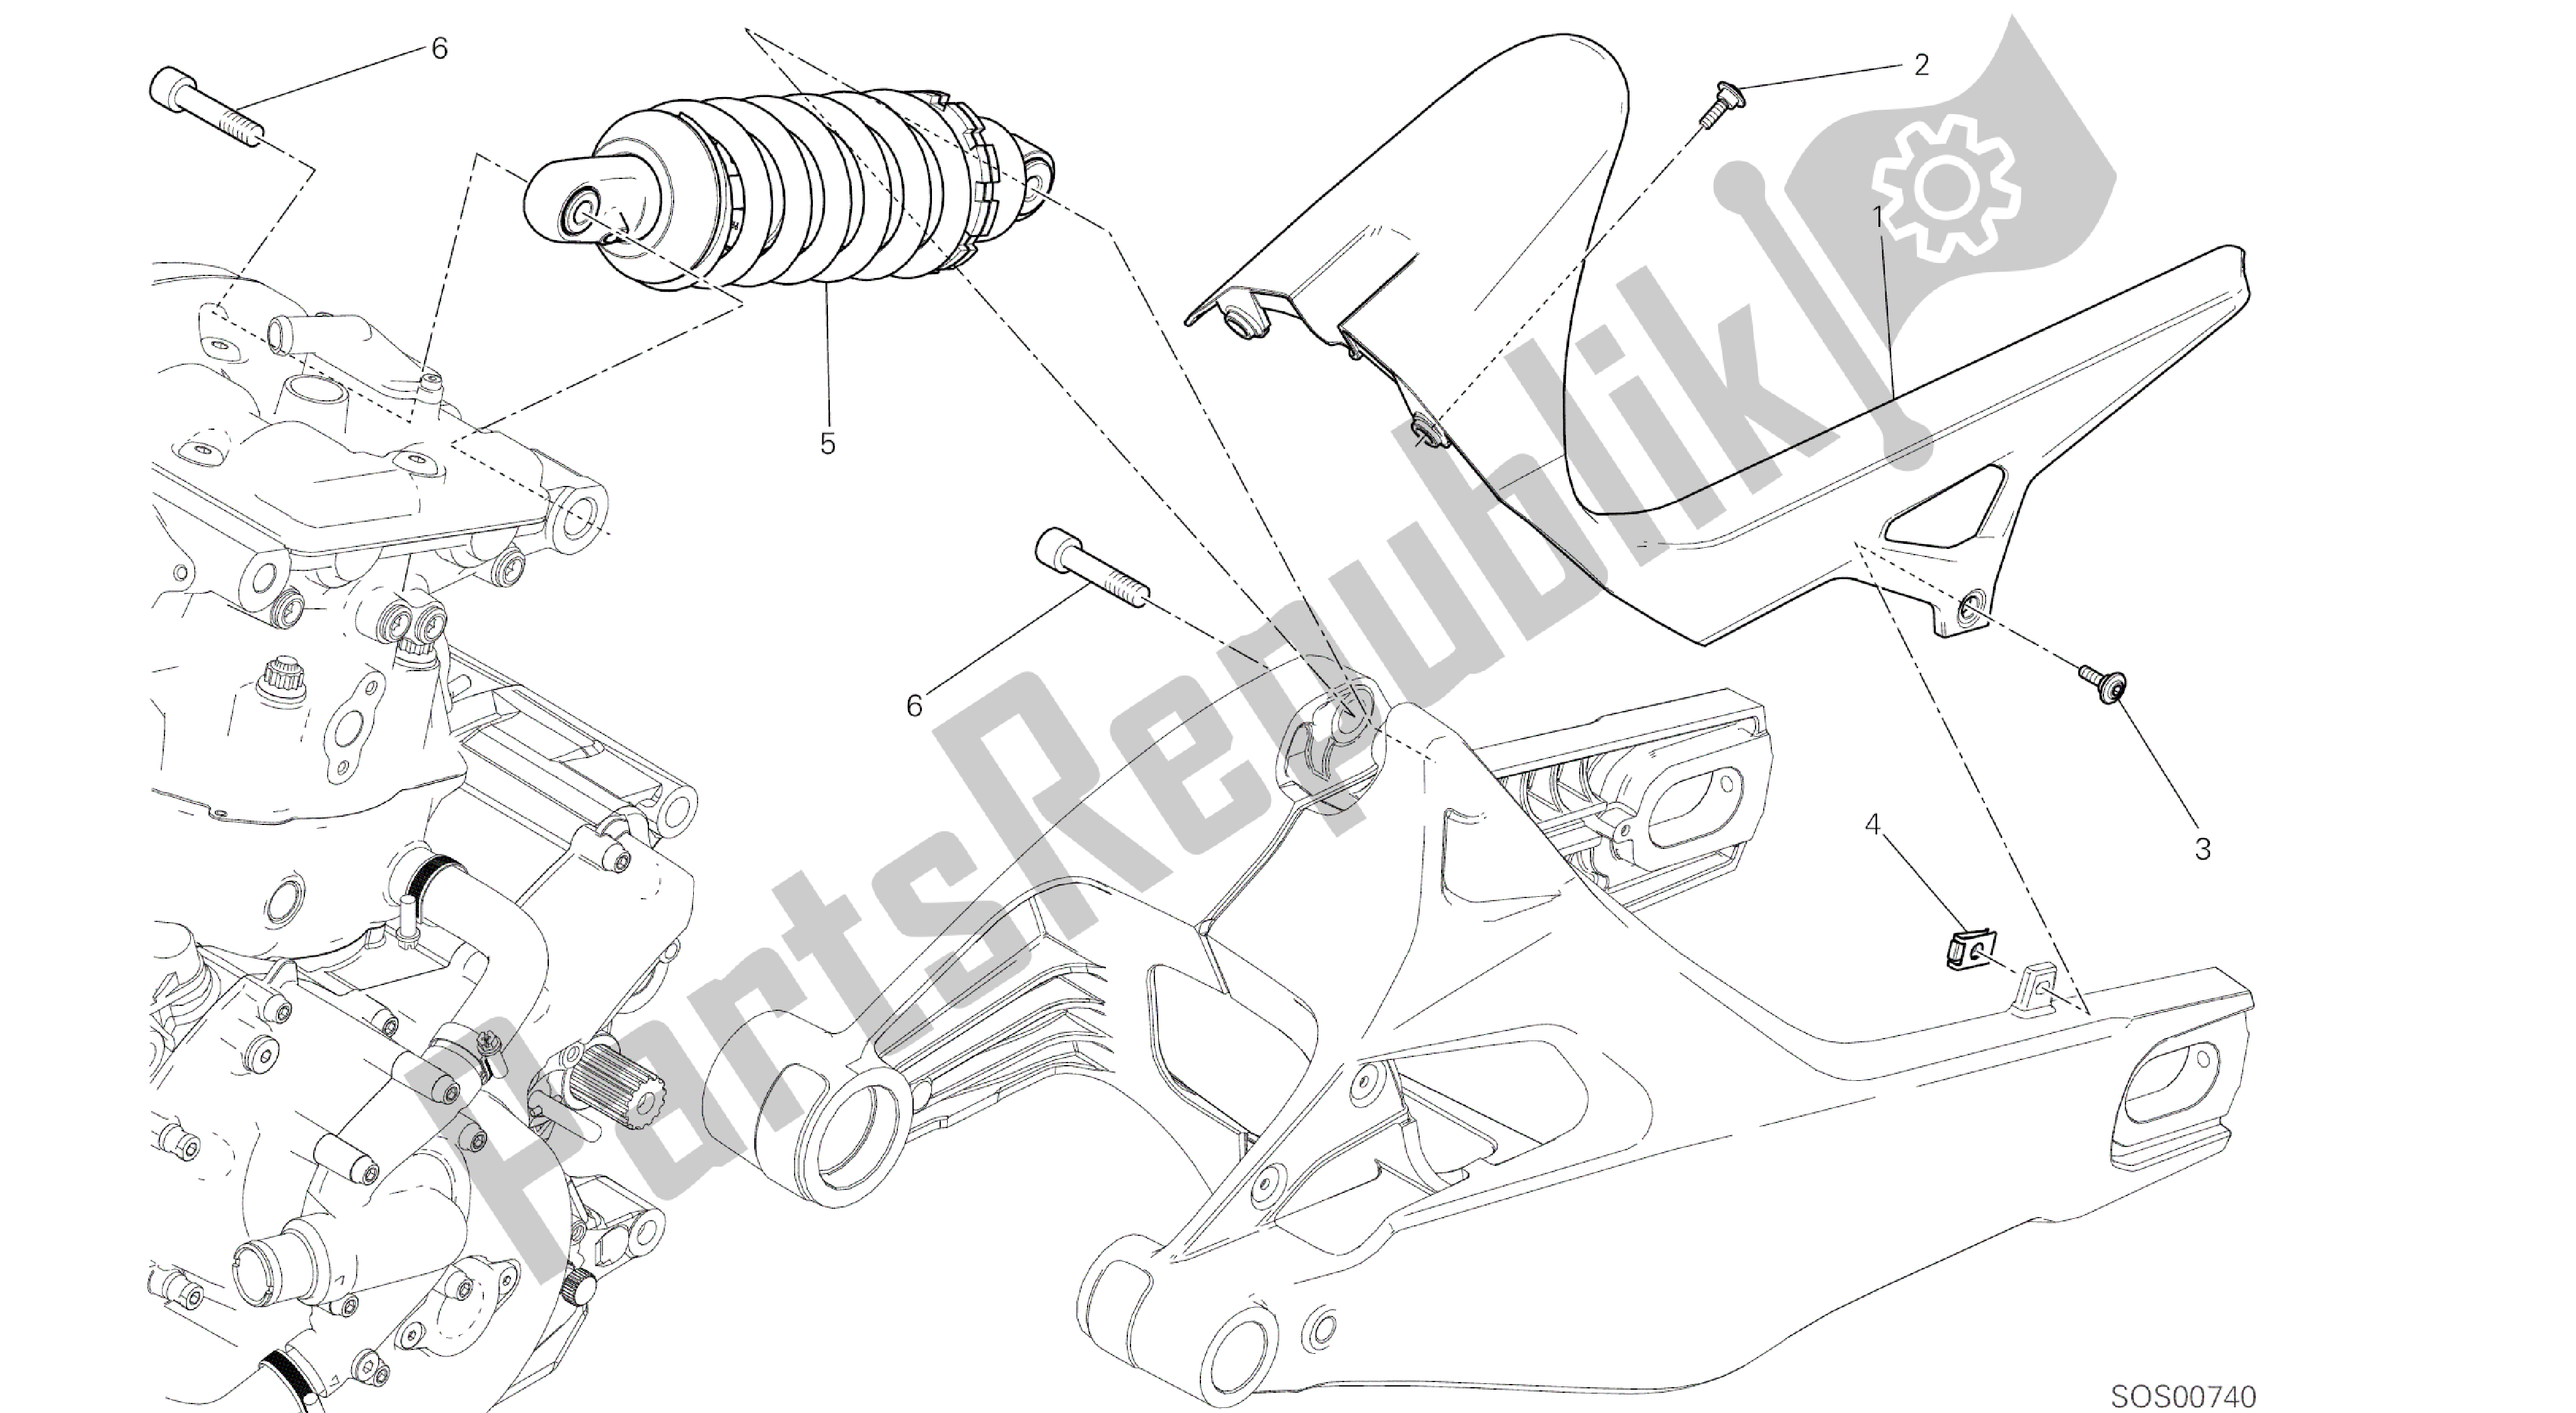 Alle onderdelen voor de Tekening 028 - Sospensione Posteriore [mod: M 821] Groepsframe van de Ducati Monster 821 2014